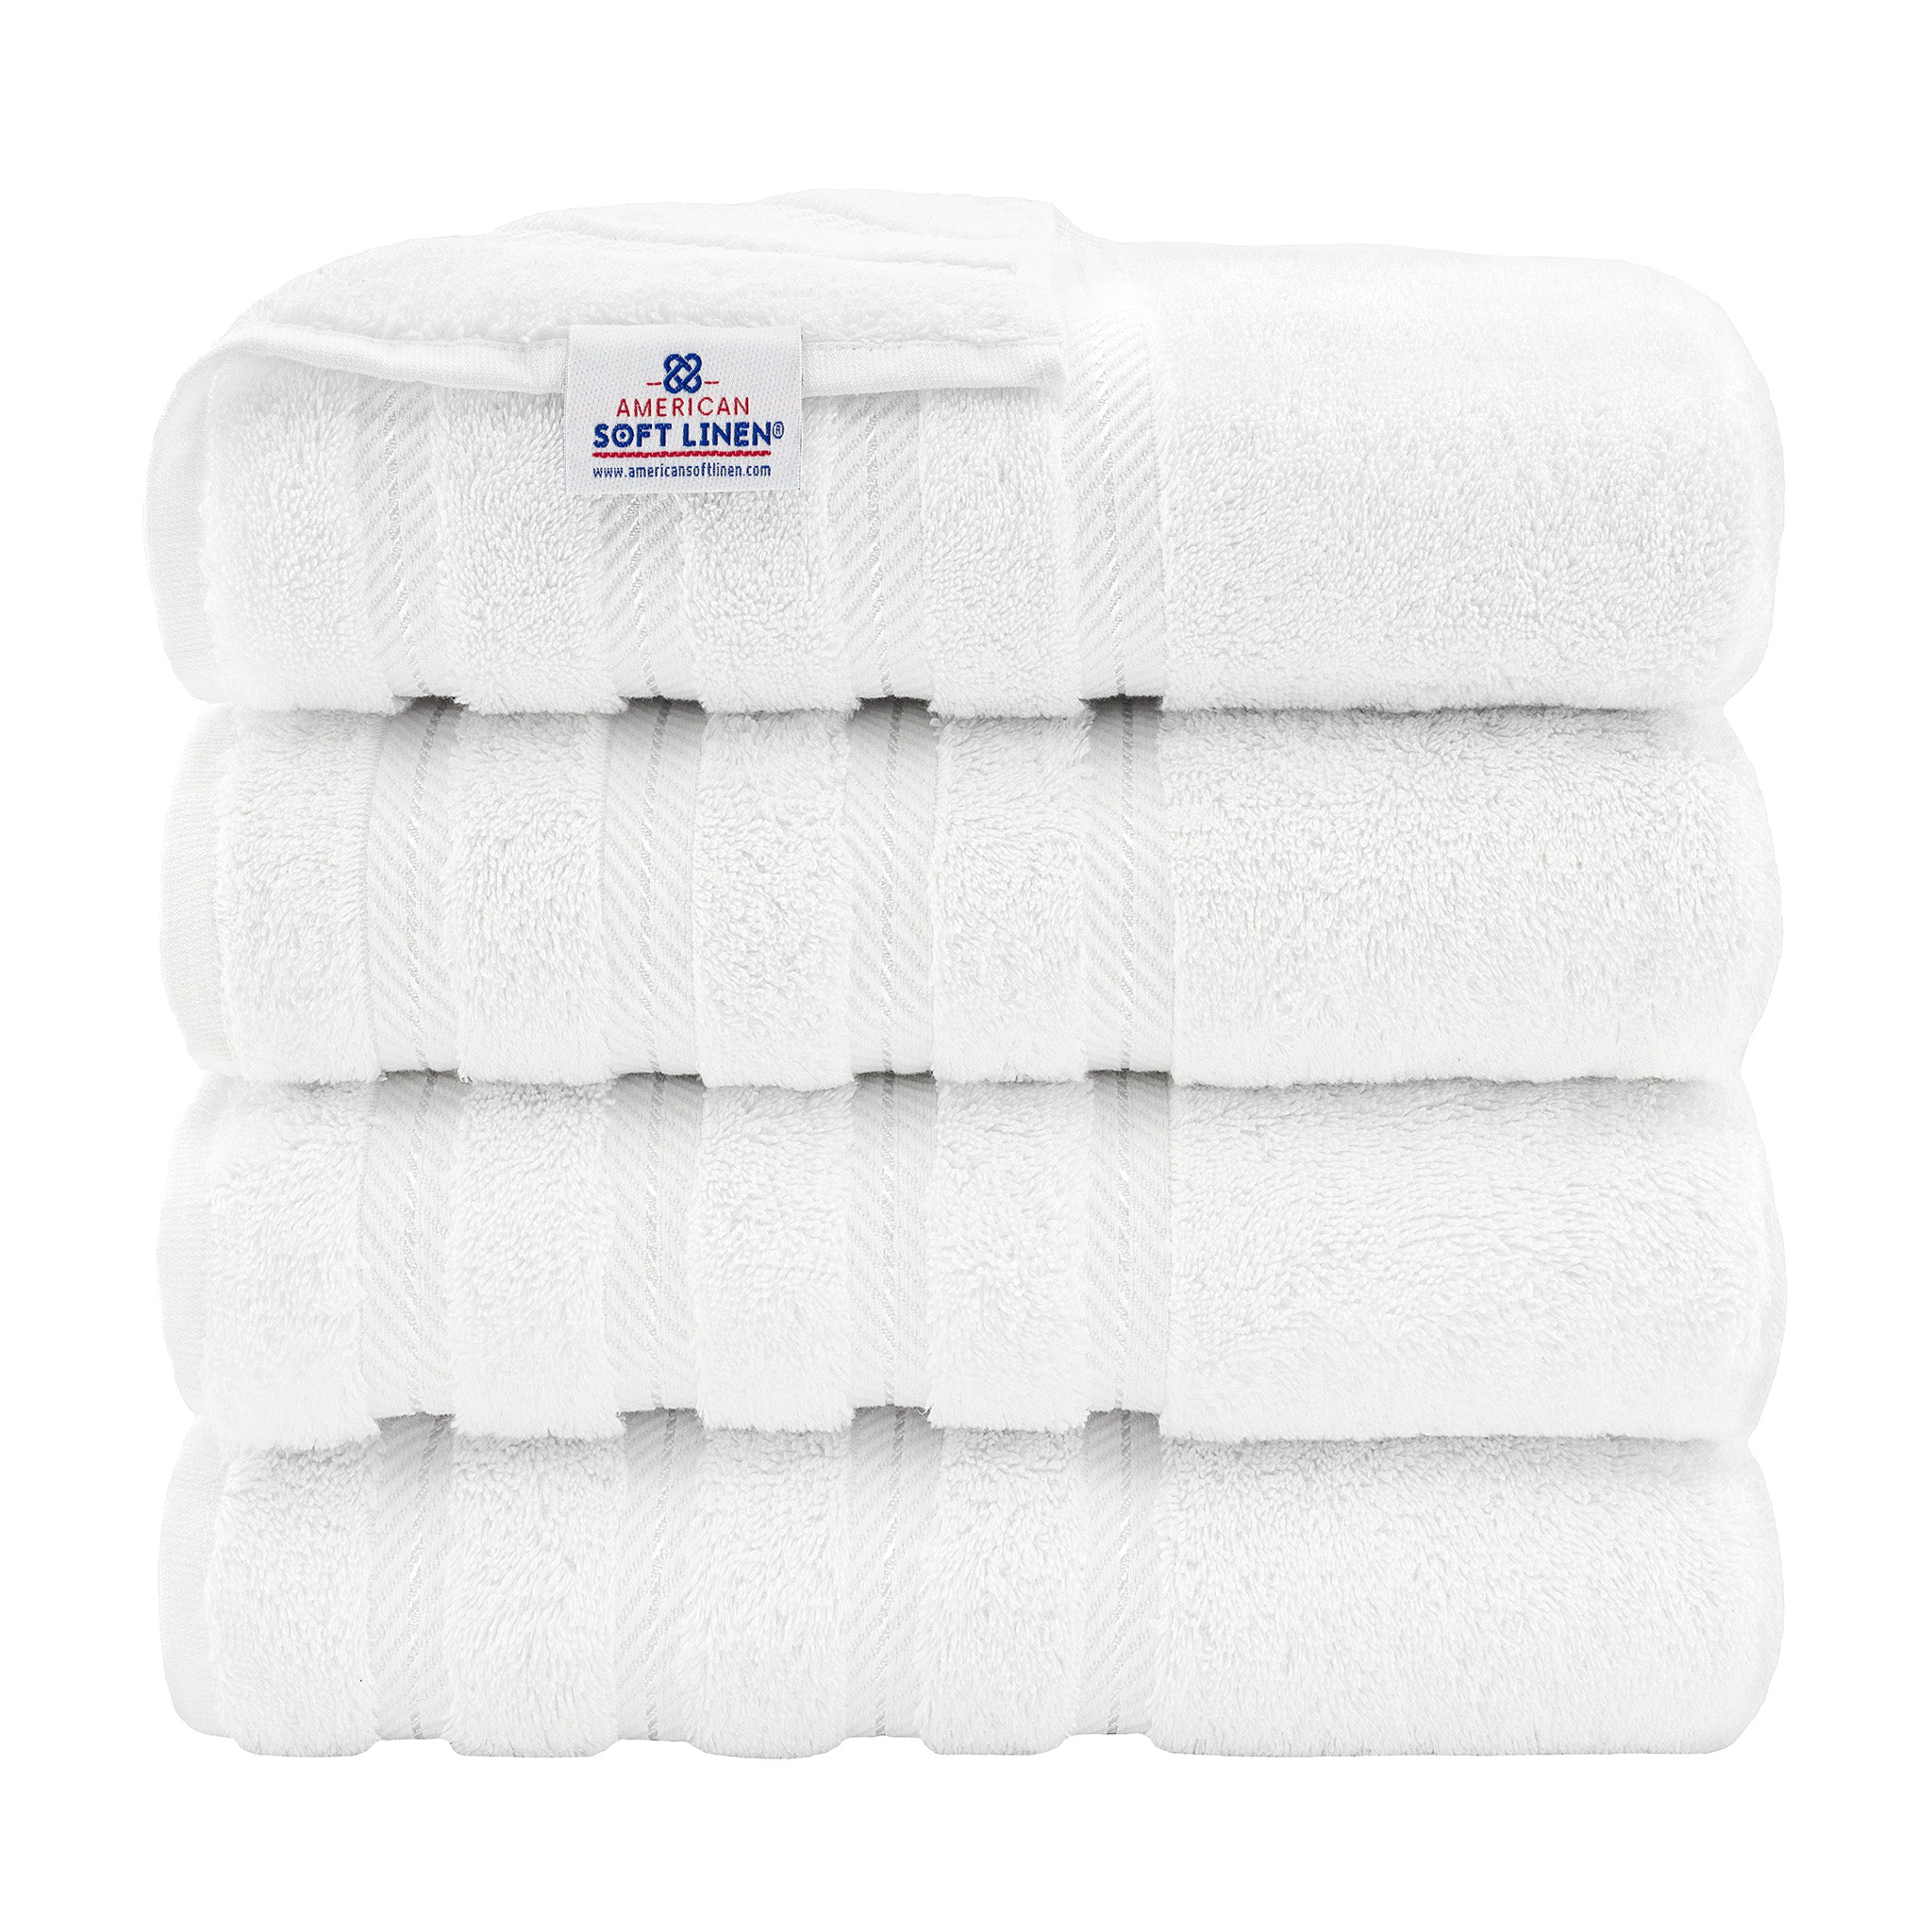 American Soft Linen 100% Turkish Cotton 4 Pack Bath Towel Set Wholesale  white-1